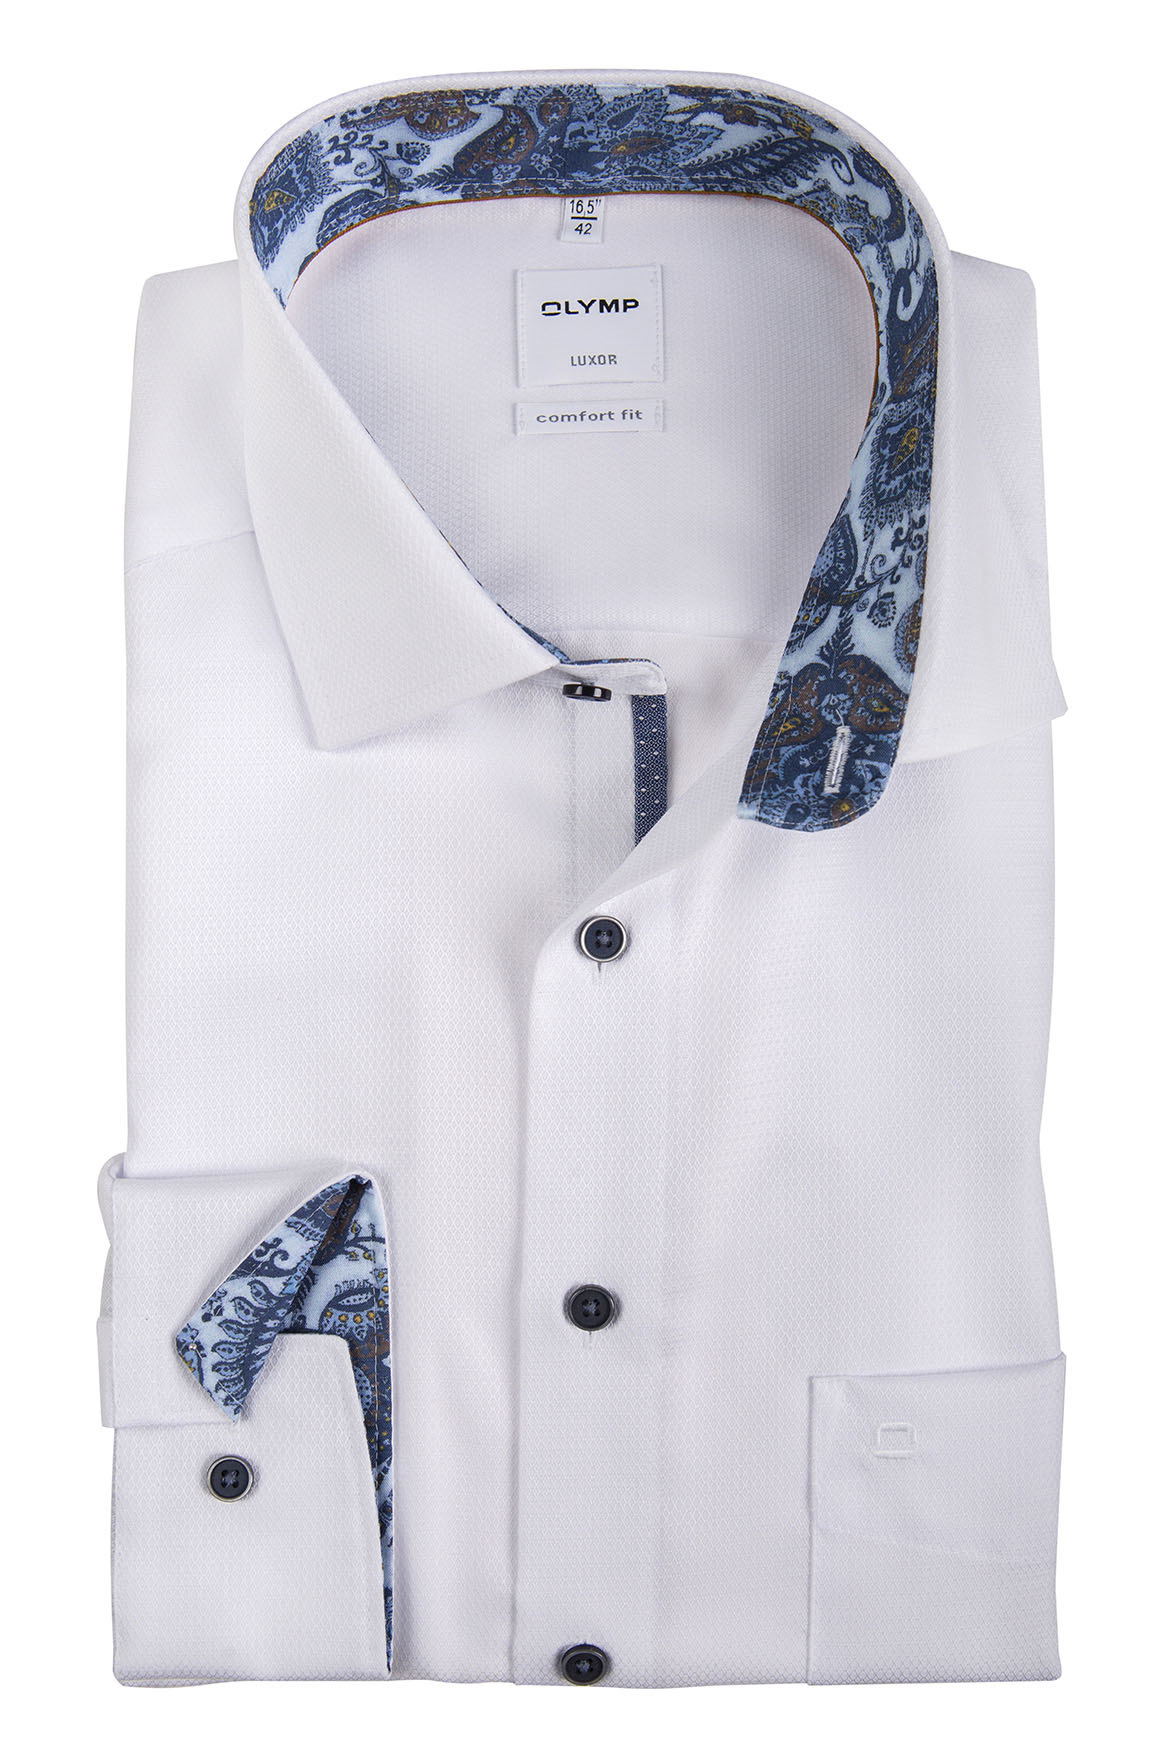 Olymp Luxor Hemd 69 cm mit extra langer Arm weiß floral | ETERNA und Olymp  Hemden 68 + 72 cm Extra Lang